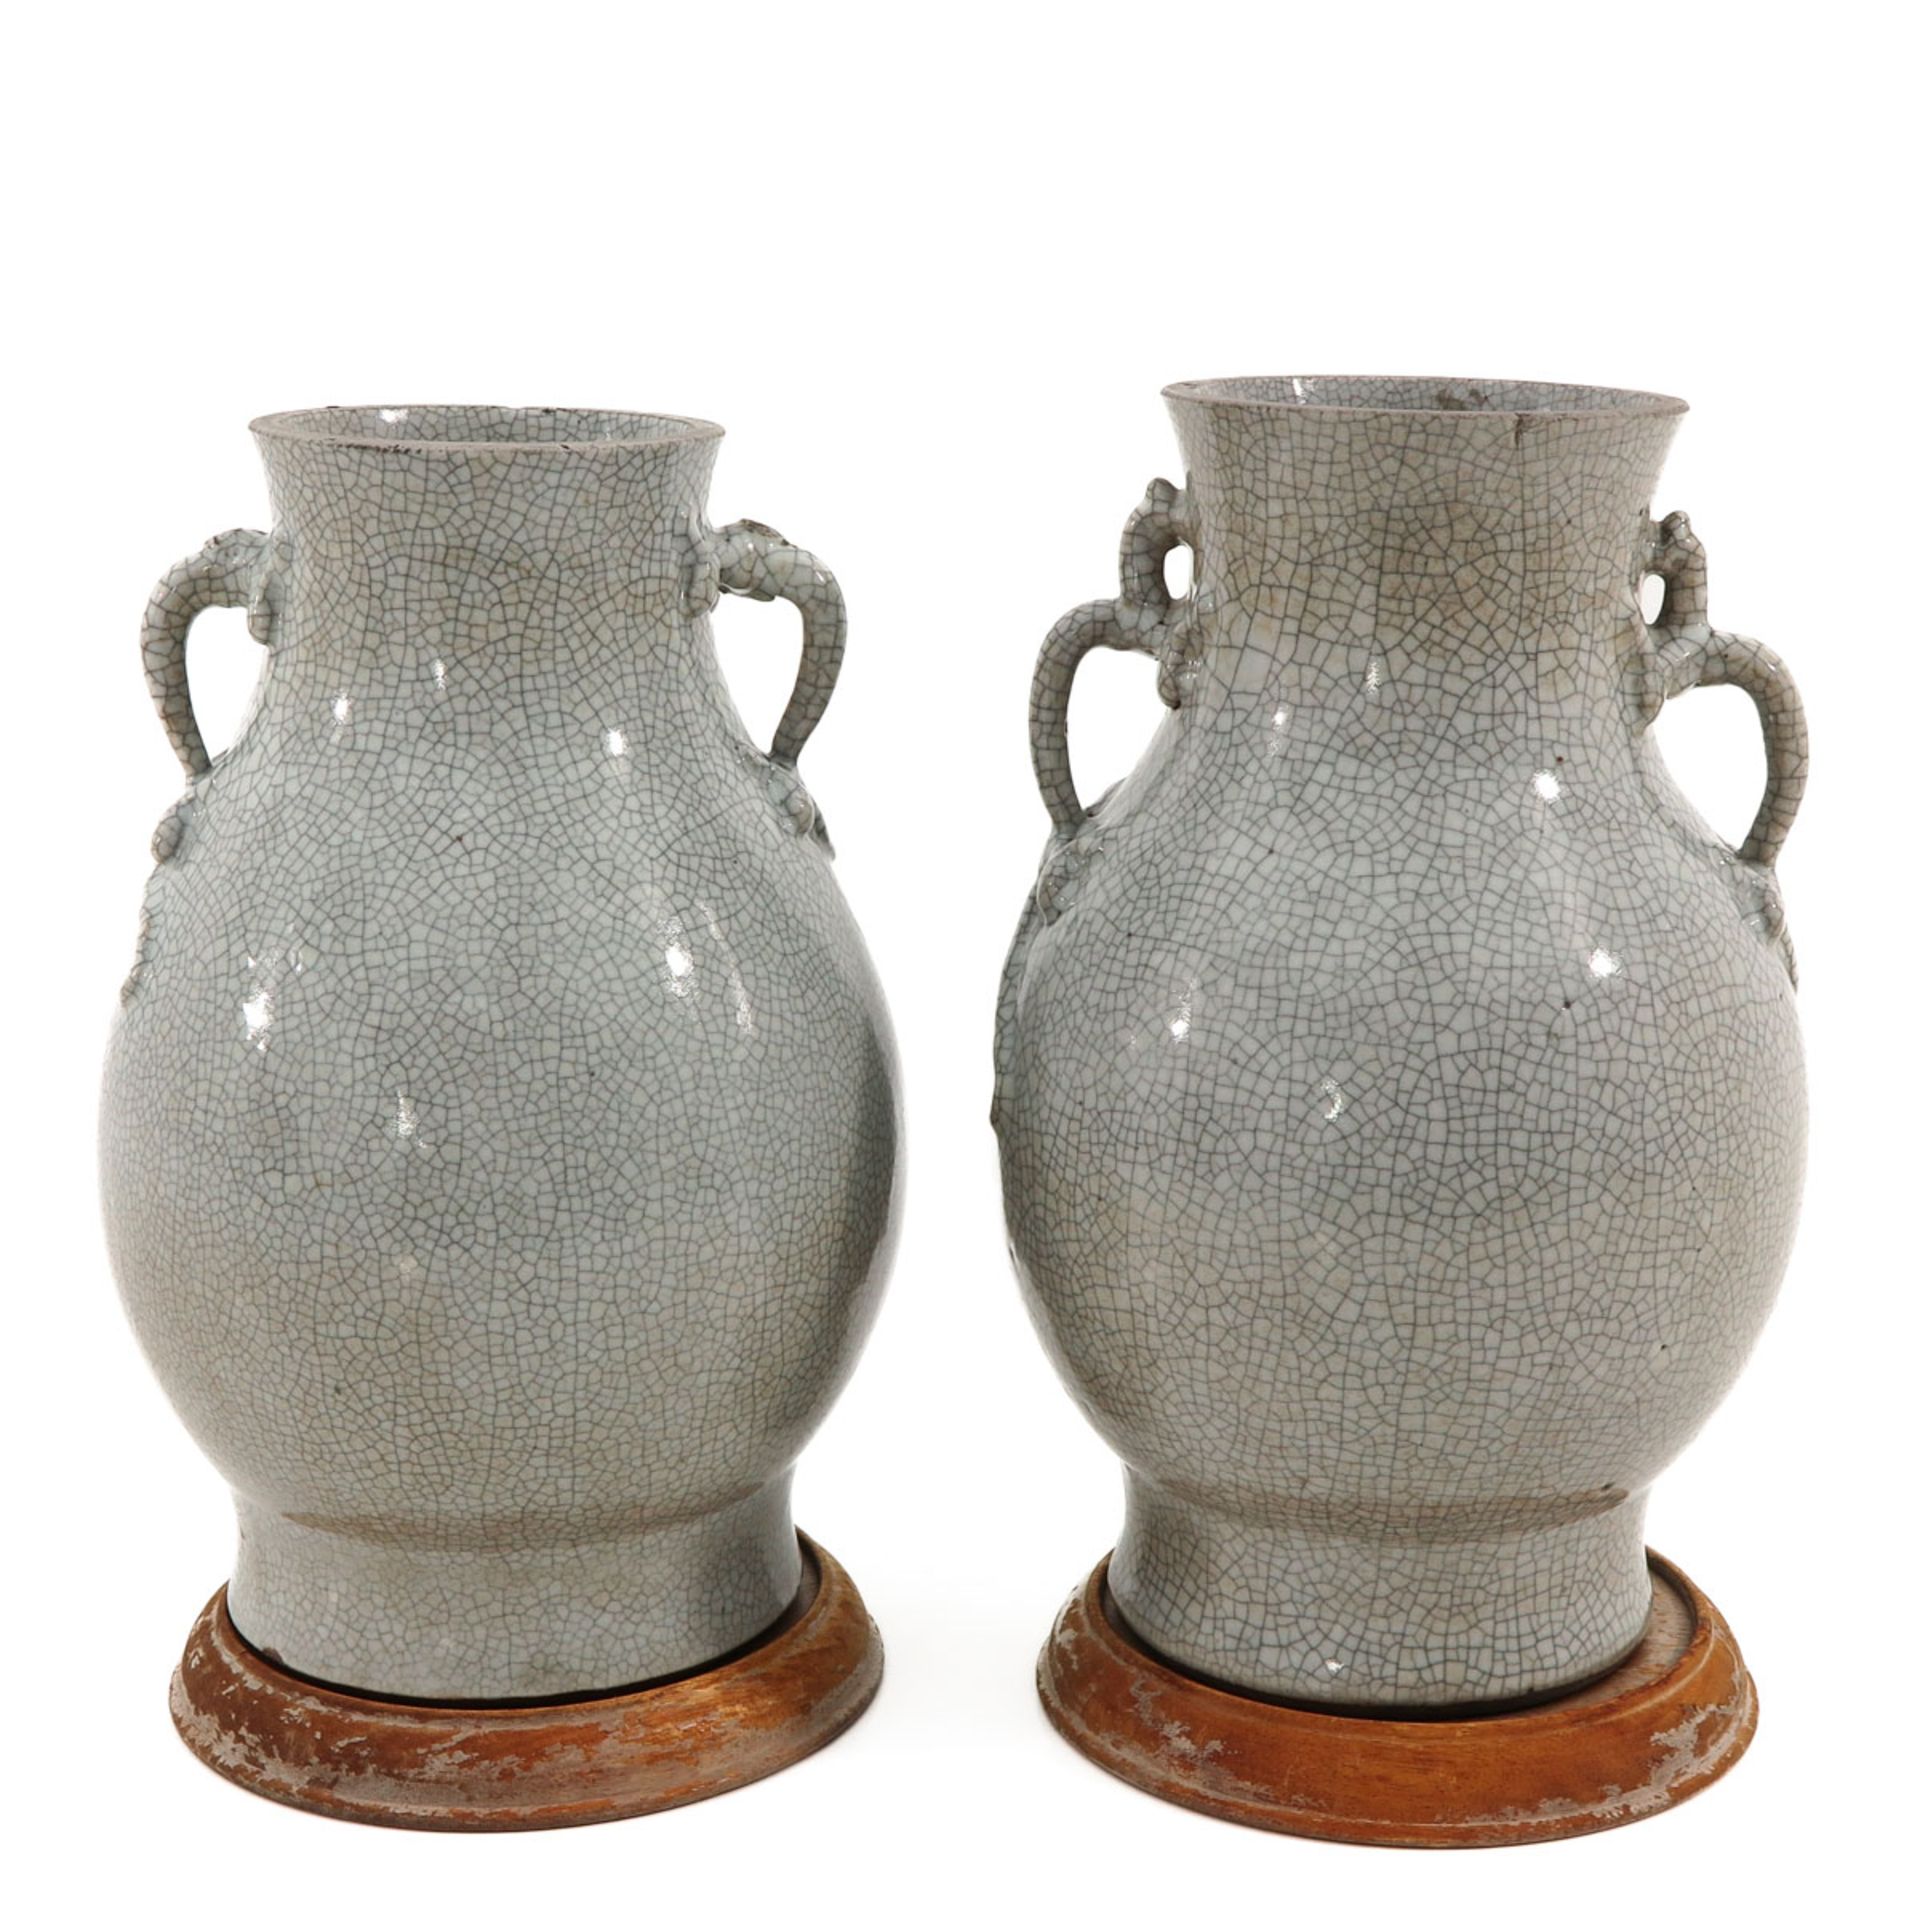 A Pair of Crackleware Vases